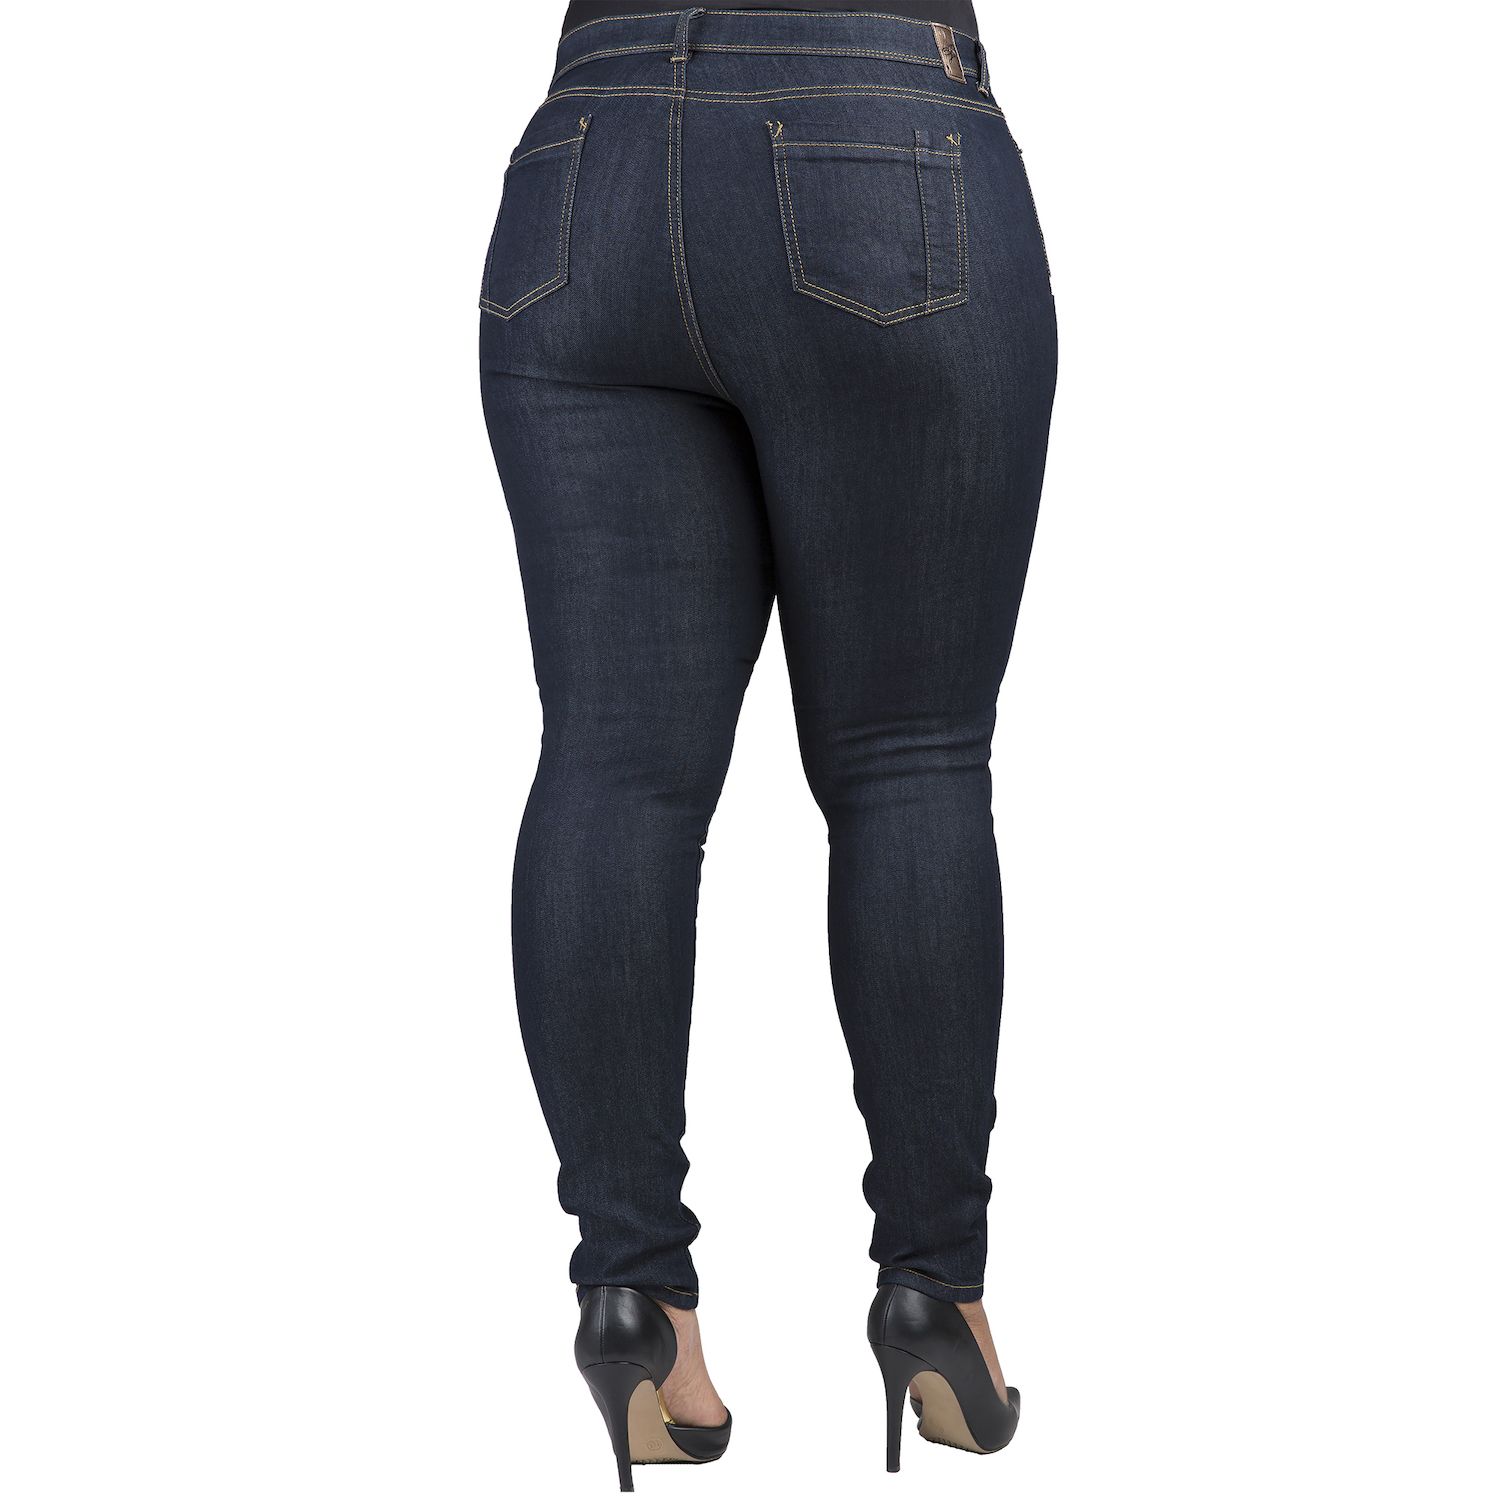 Базовые темные джинсы скинни Maya больших размеров со средней посадкой, внутренний шов 29 дюймов Poetic Justice justice justice planisphere limited